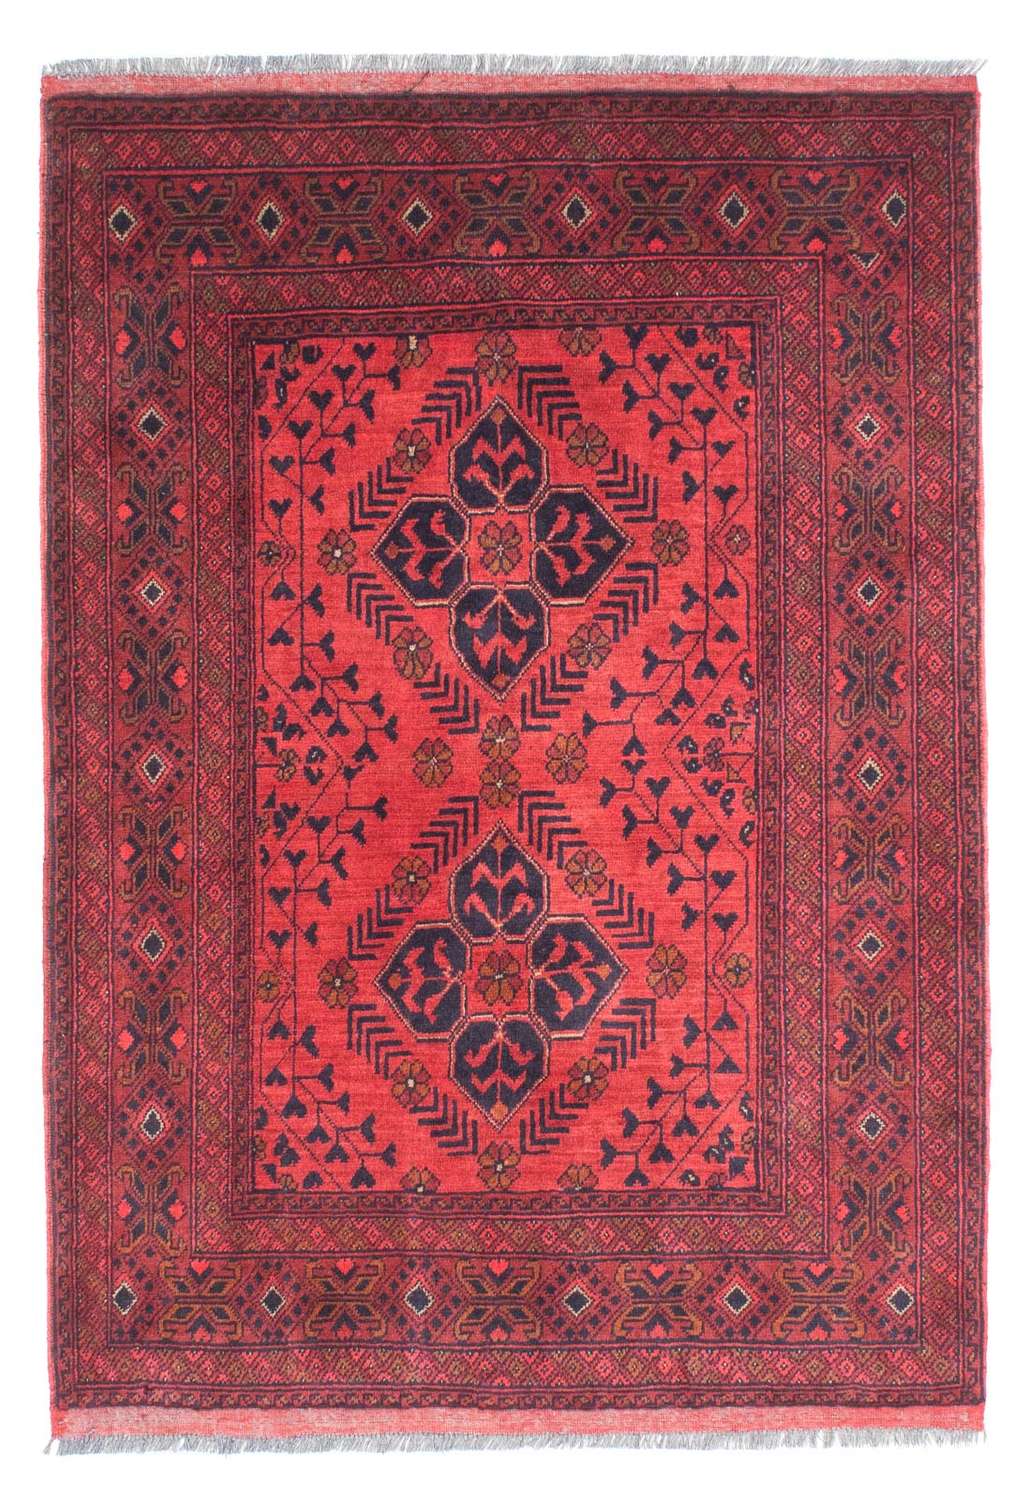 Afghansk matta - Kunduz - 146 x 104 cm - mörkröd